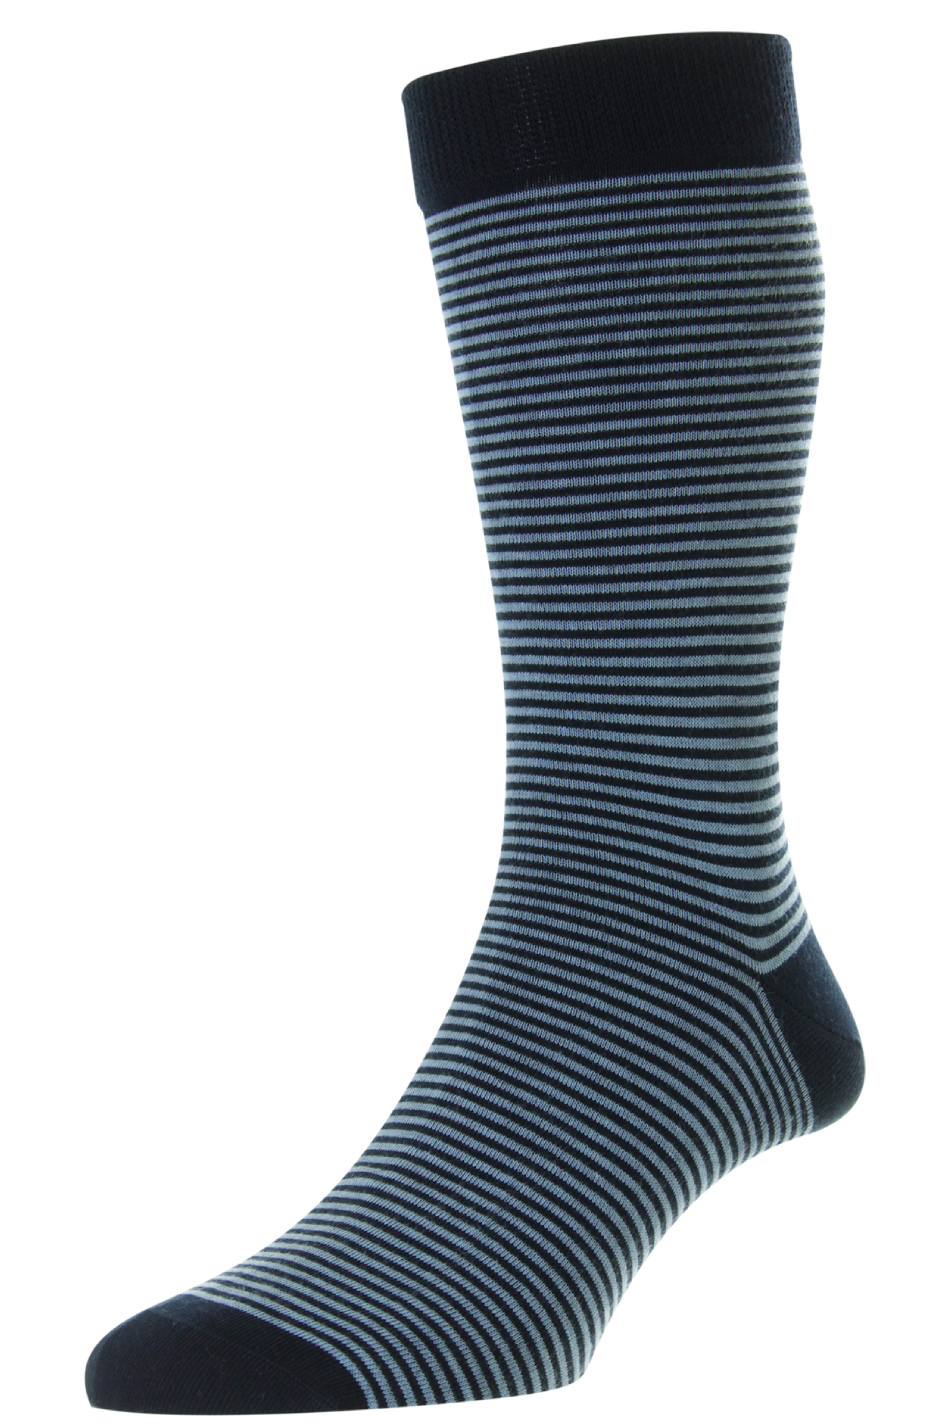 Pantherella Men's Holst Stripe Sock